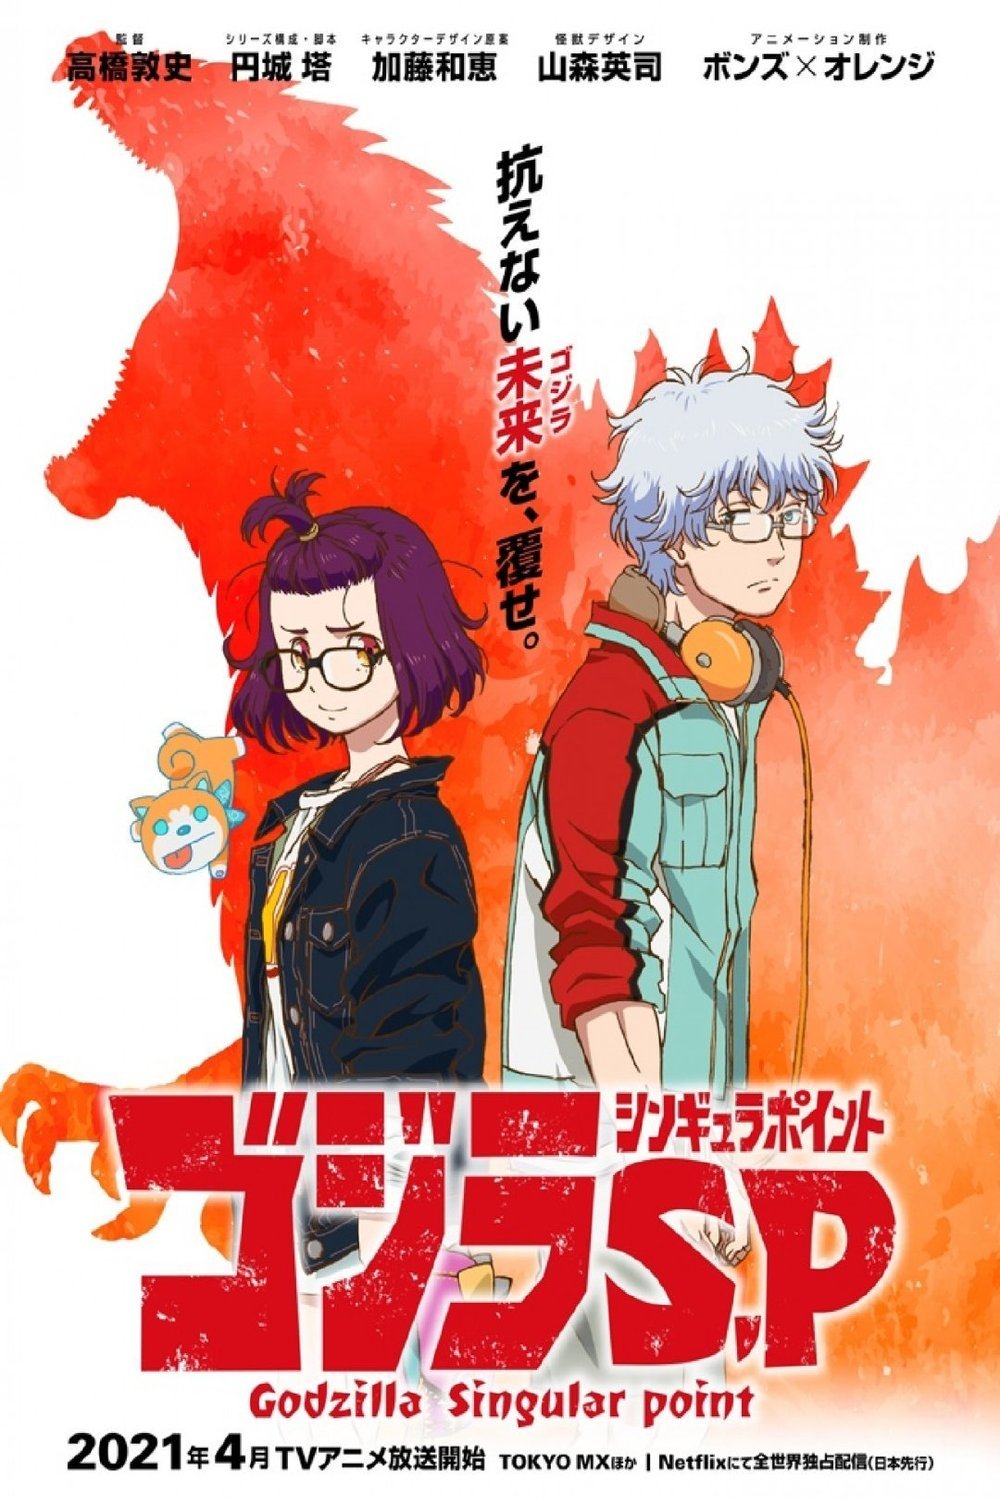 L'affiche originale du film Gojira shingyura pointo en japonais